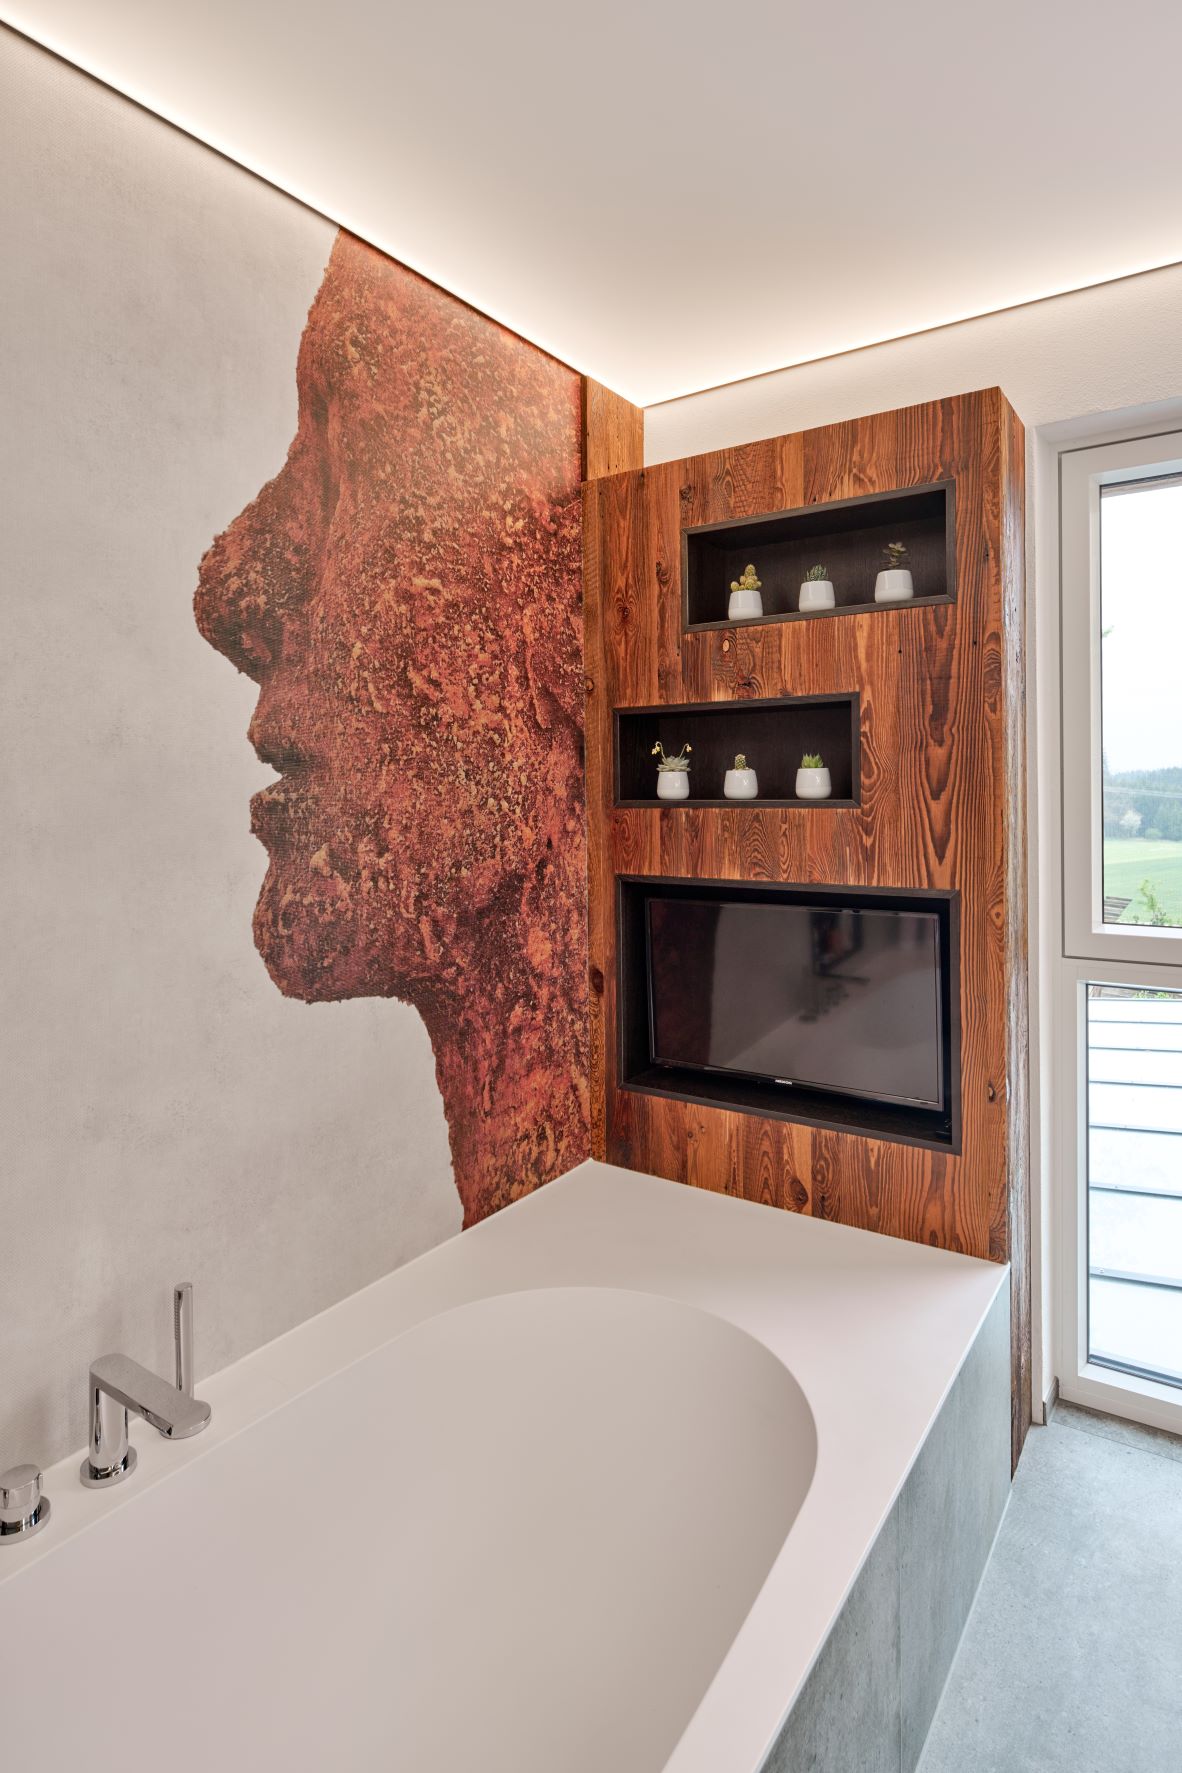 Badewanne mit integriertem Fernseher in Holzelement